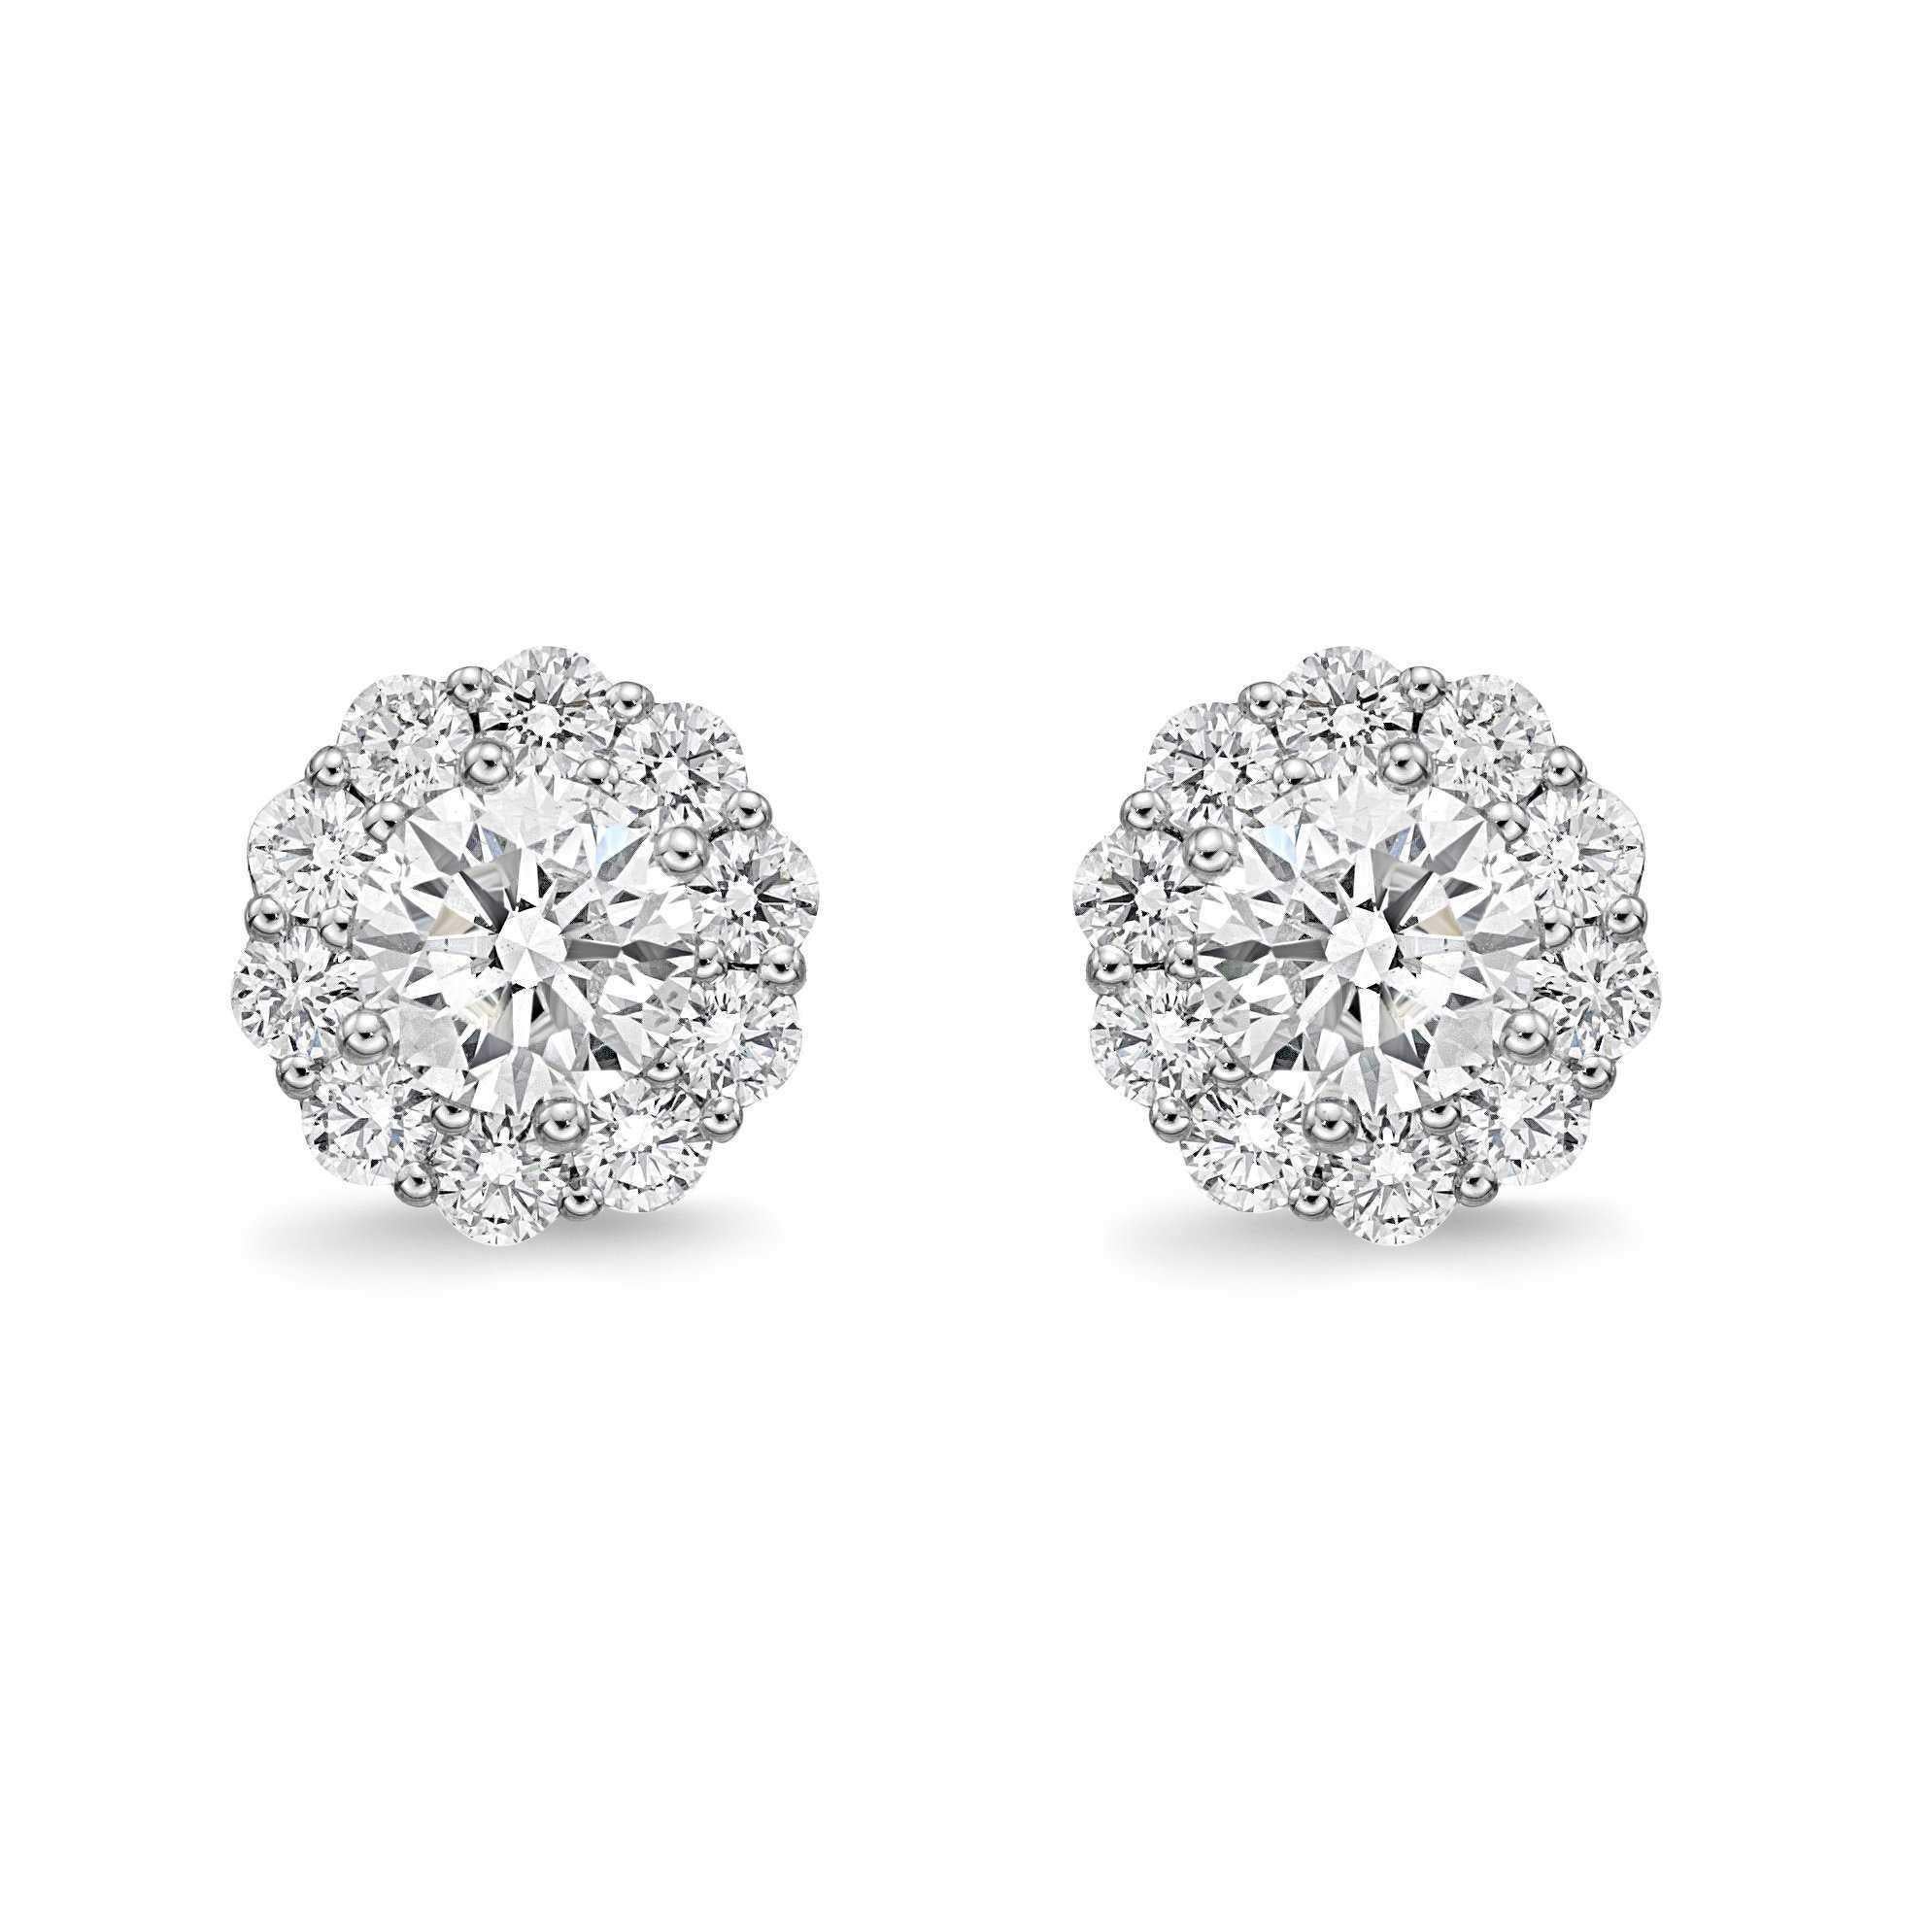 Les boucles d'oreilles Memoire Blossom Collection Diamond comprennent 22 diamants d'un poids combiné de 1,52cts p.c., sertis dans de l'or blanc 18K. D'une couleur G-H et d'une clarté SI1, ces boucles d'oreilles présentent une taille idéale et